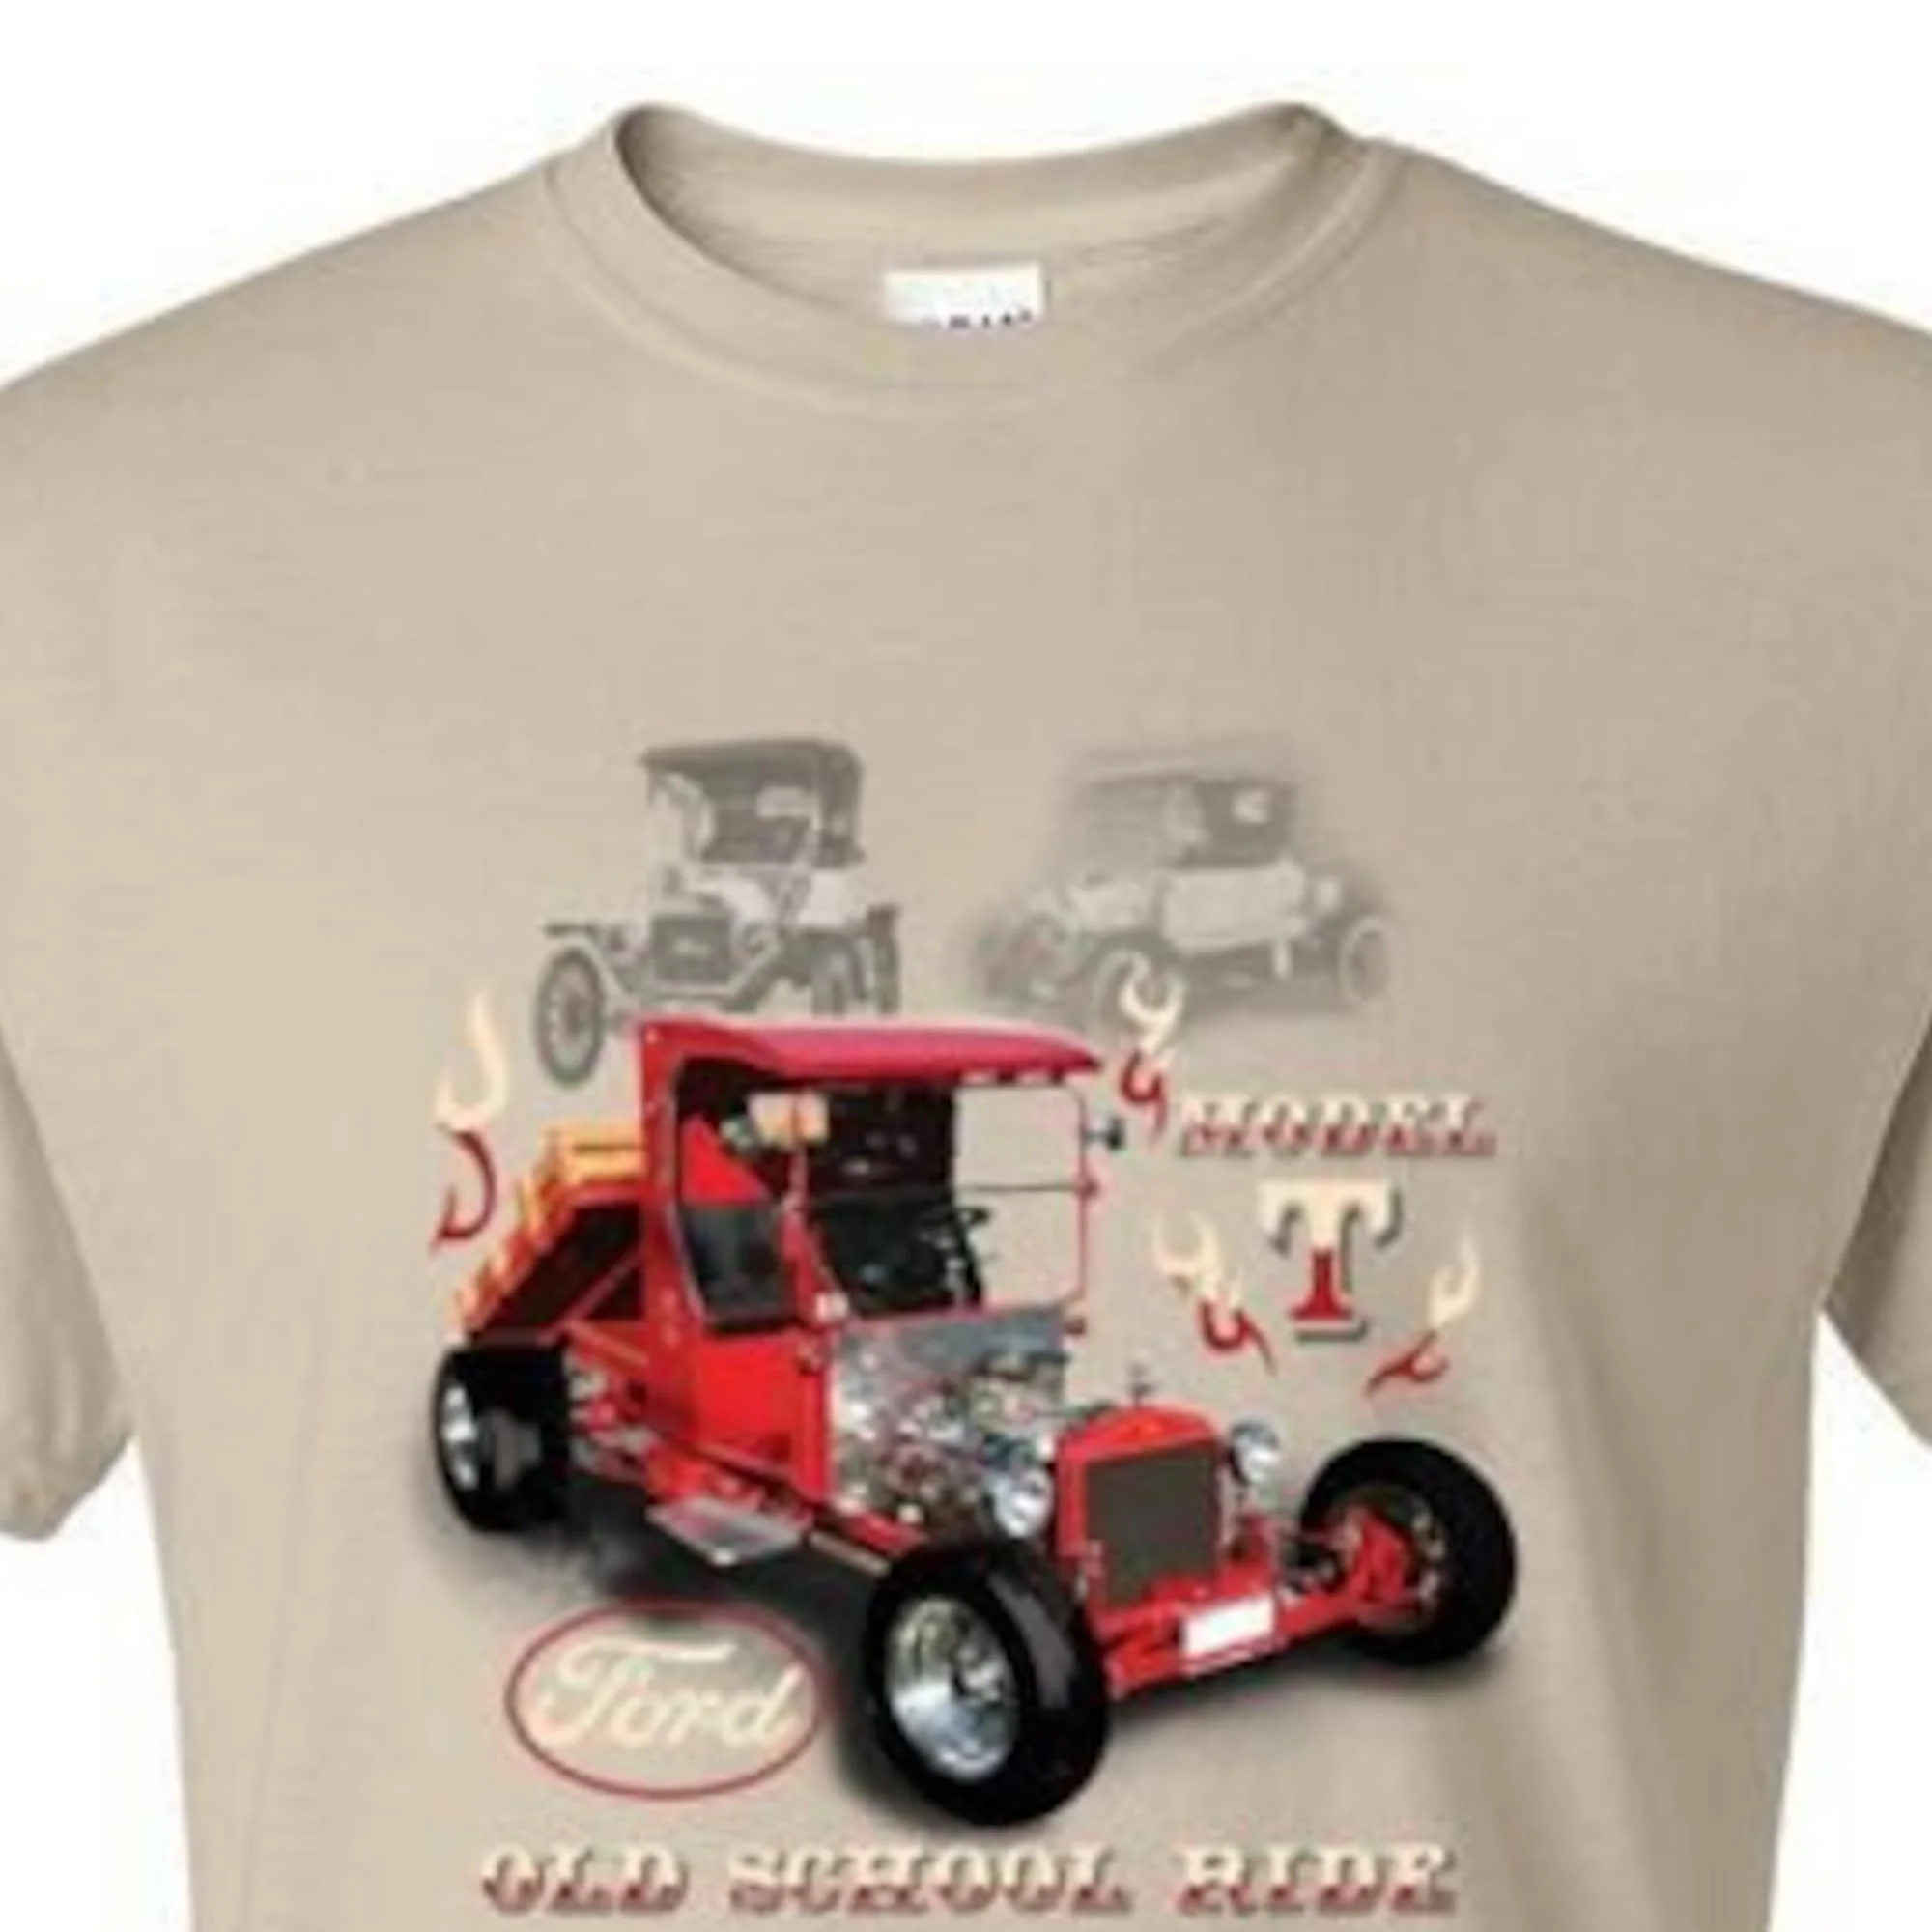 Модель футболки OLD School Cars Trucks Hot Rod Для Взрослых